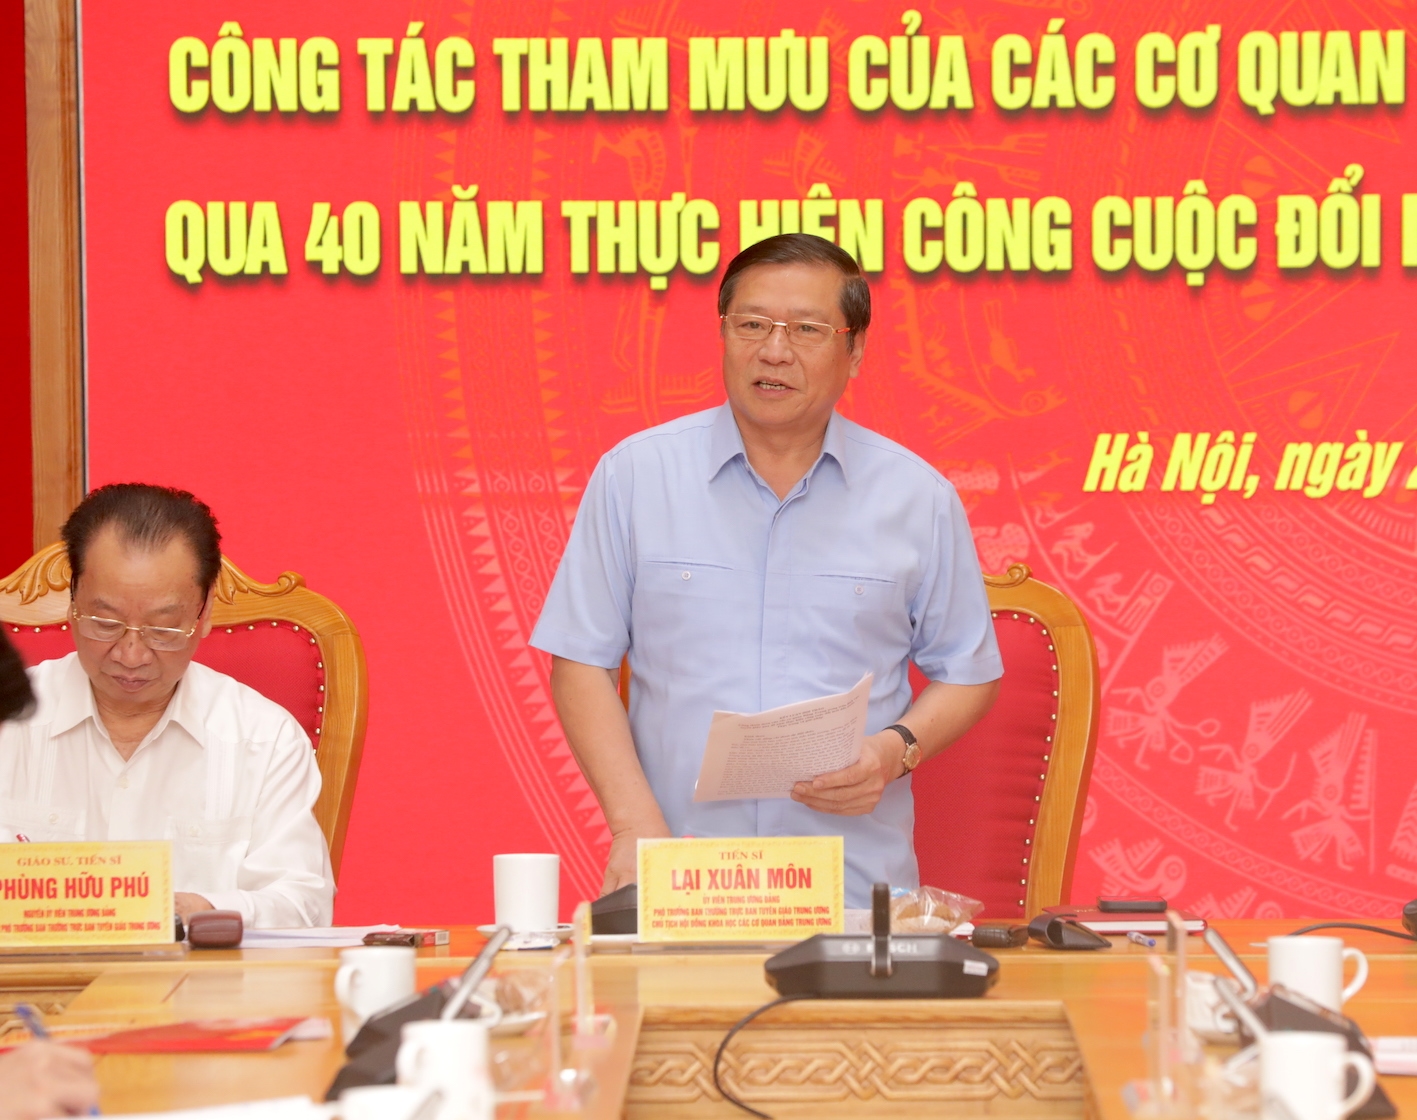 Đồng chí Lại Xuân Môn, Uỷ viên Trung ương Đảng, Phó Trưởng ban Thường trực Ban Tuyên giáo Trung ương, Chủ tịch Hội đồng Khoa học các cơ quan Đảng Trung ương phát biểu kết luận.